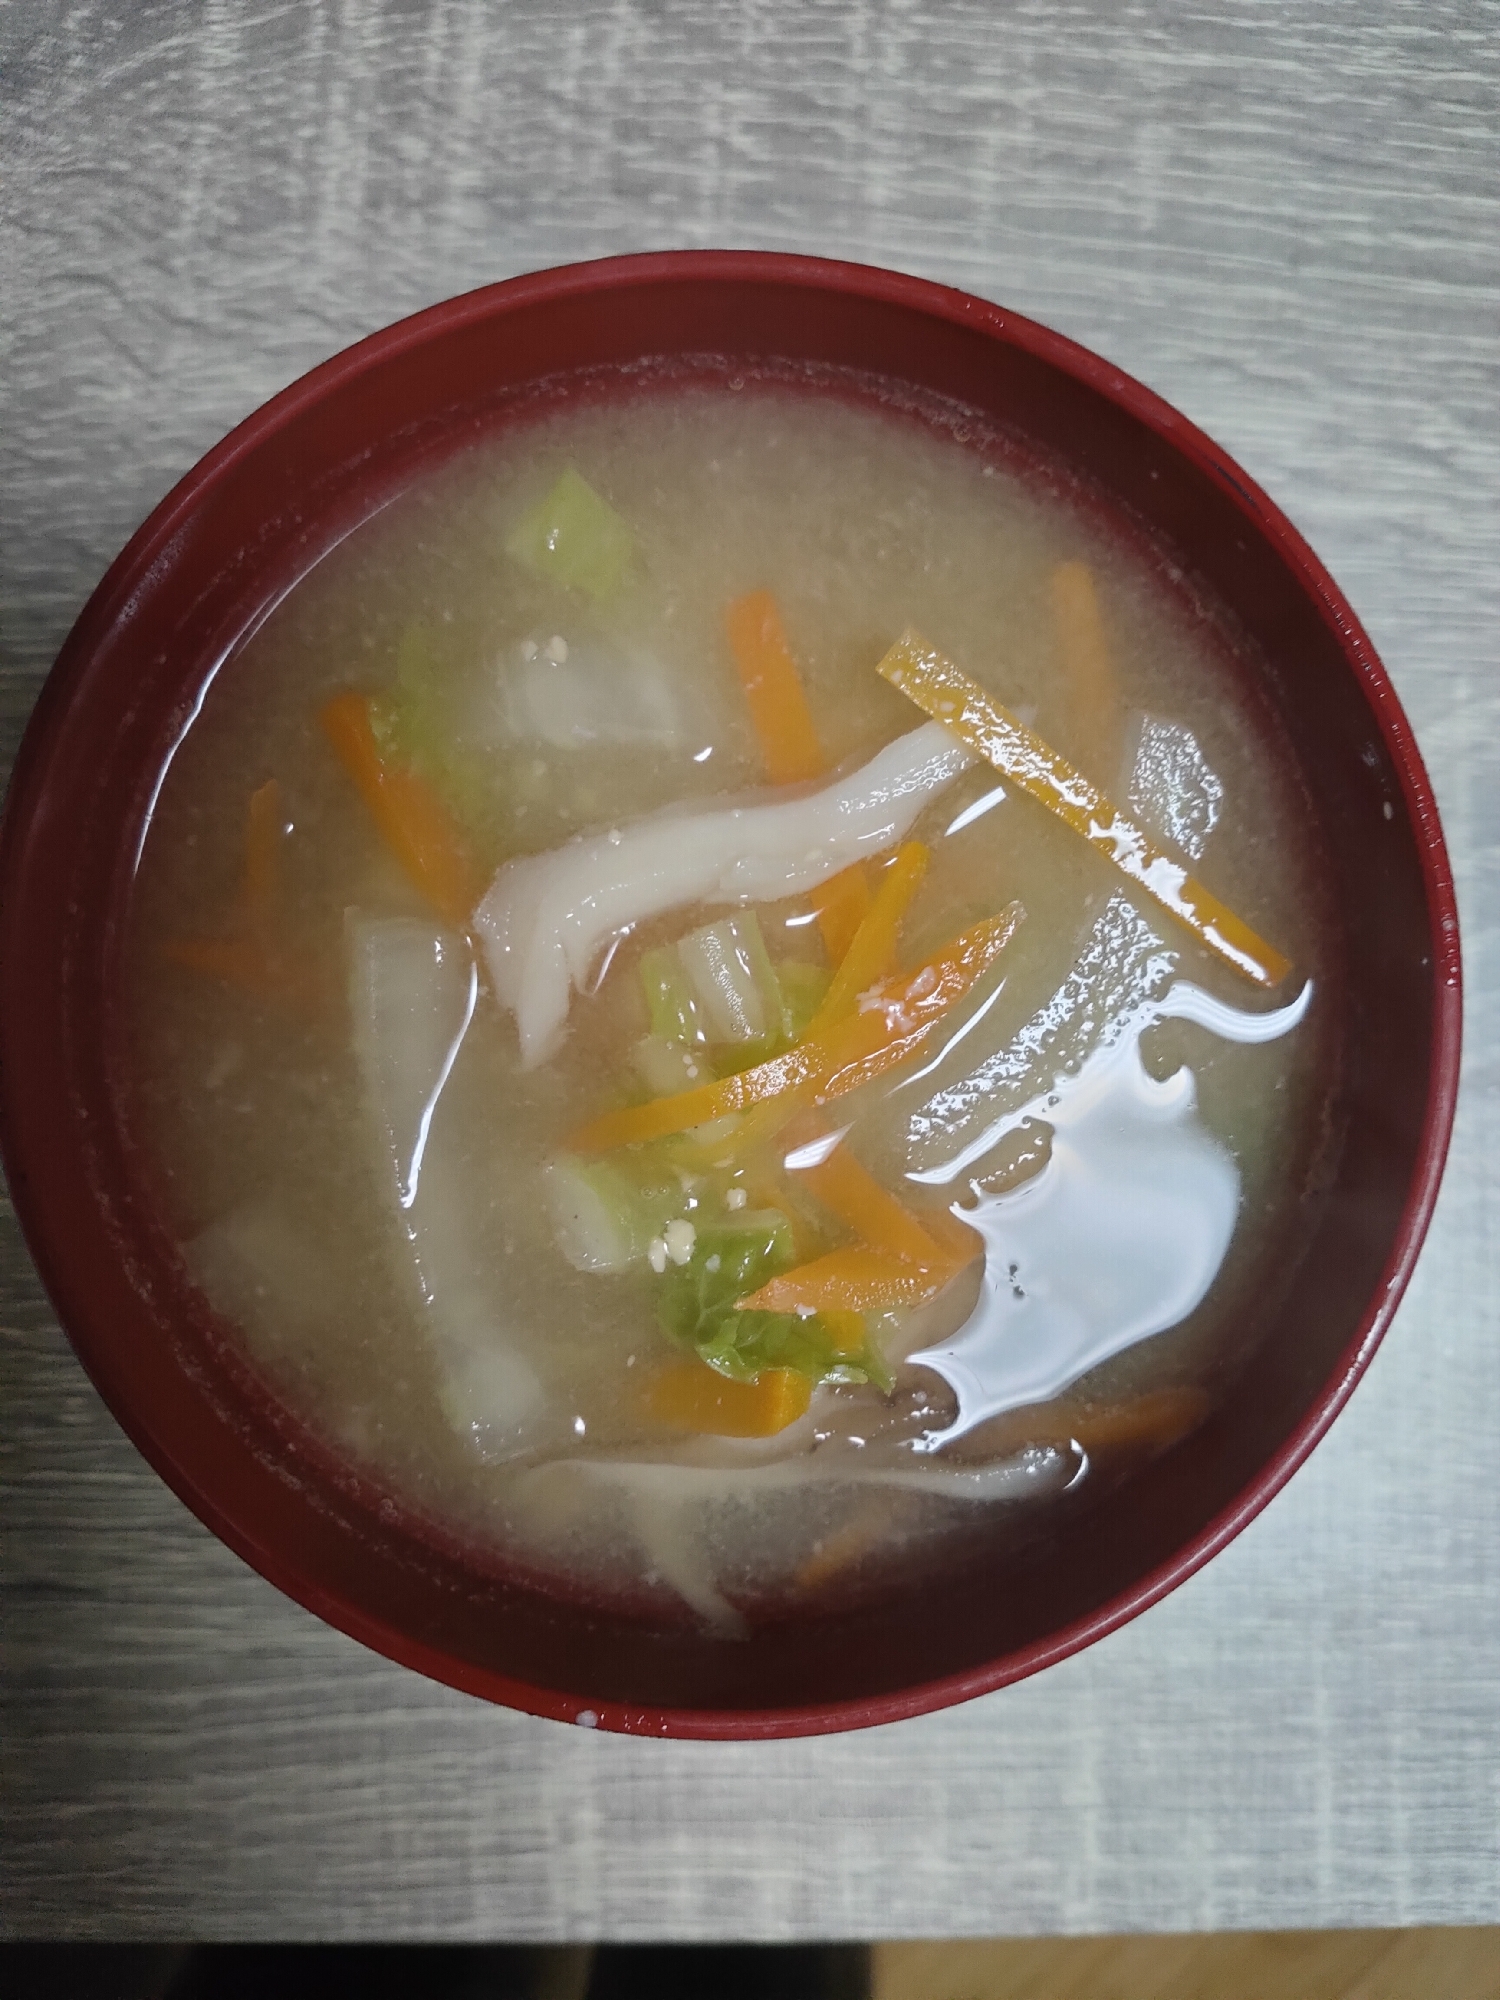 白菜とにんじんと舞茸のお味噌汁